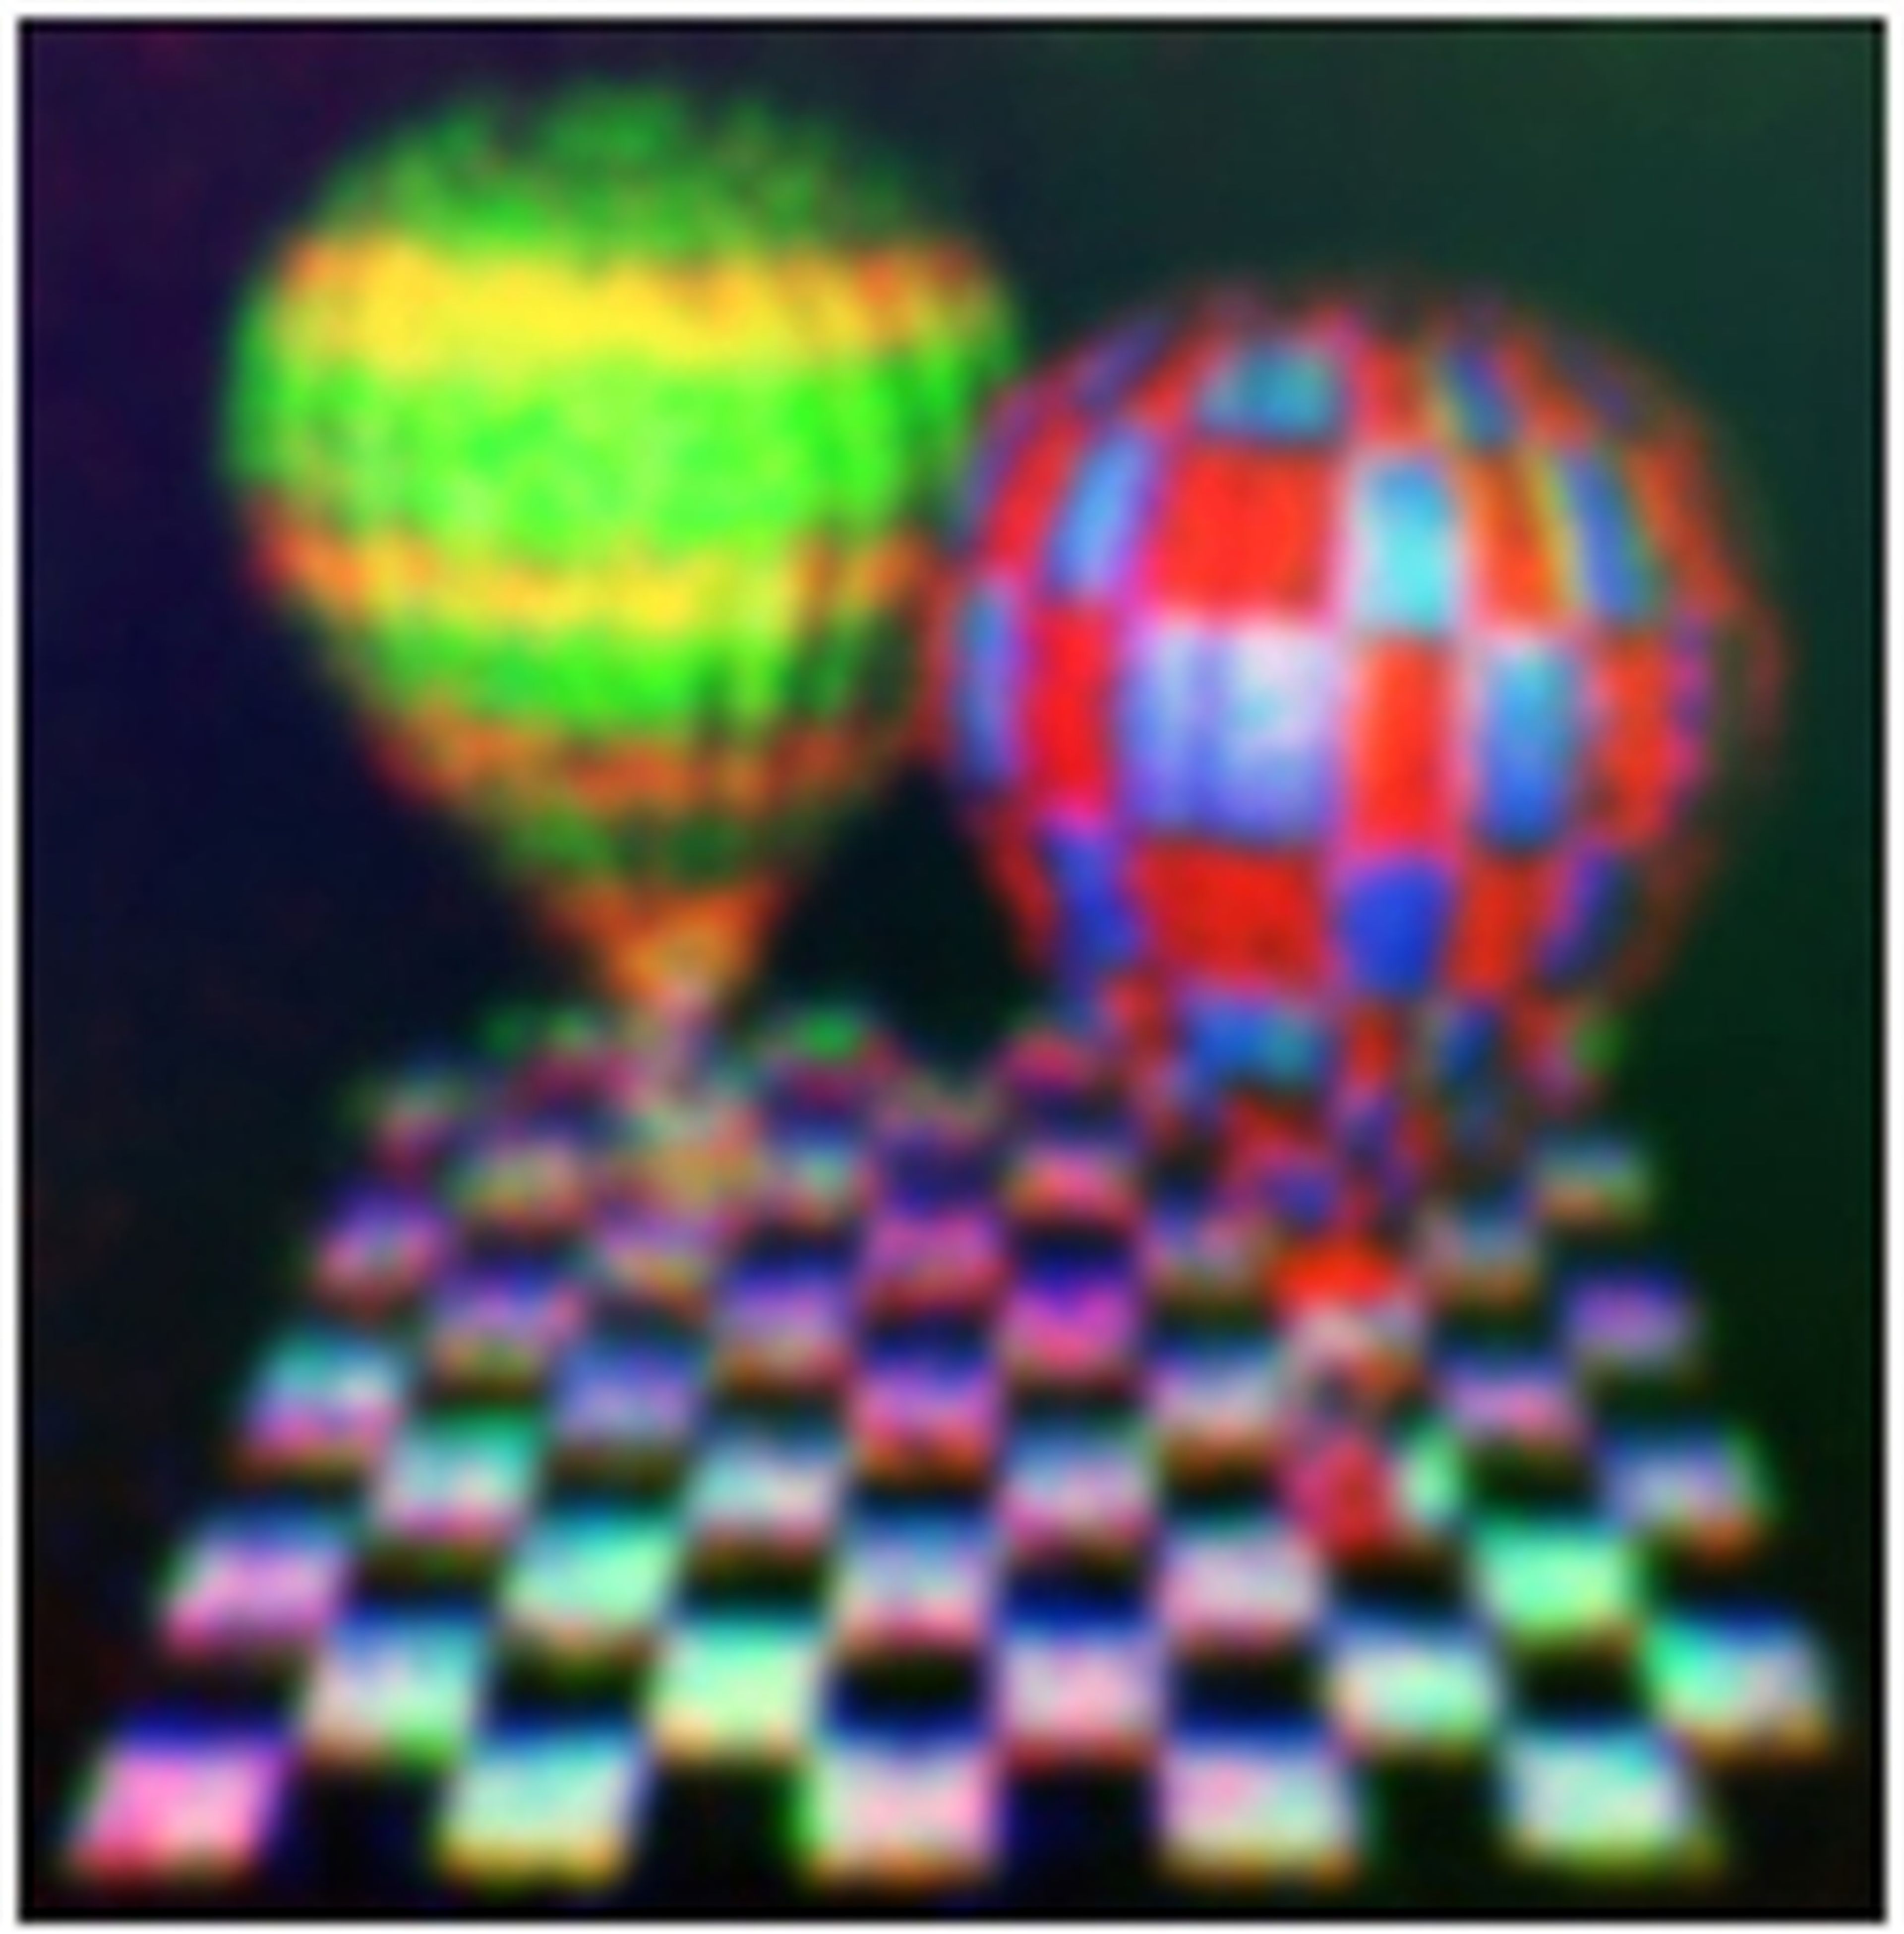 Imagen obtenida en una pantalla holográfica 3D de grafeno